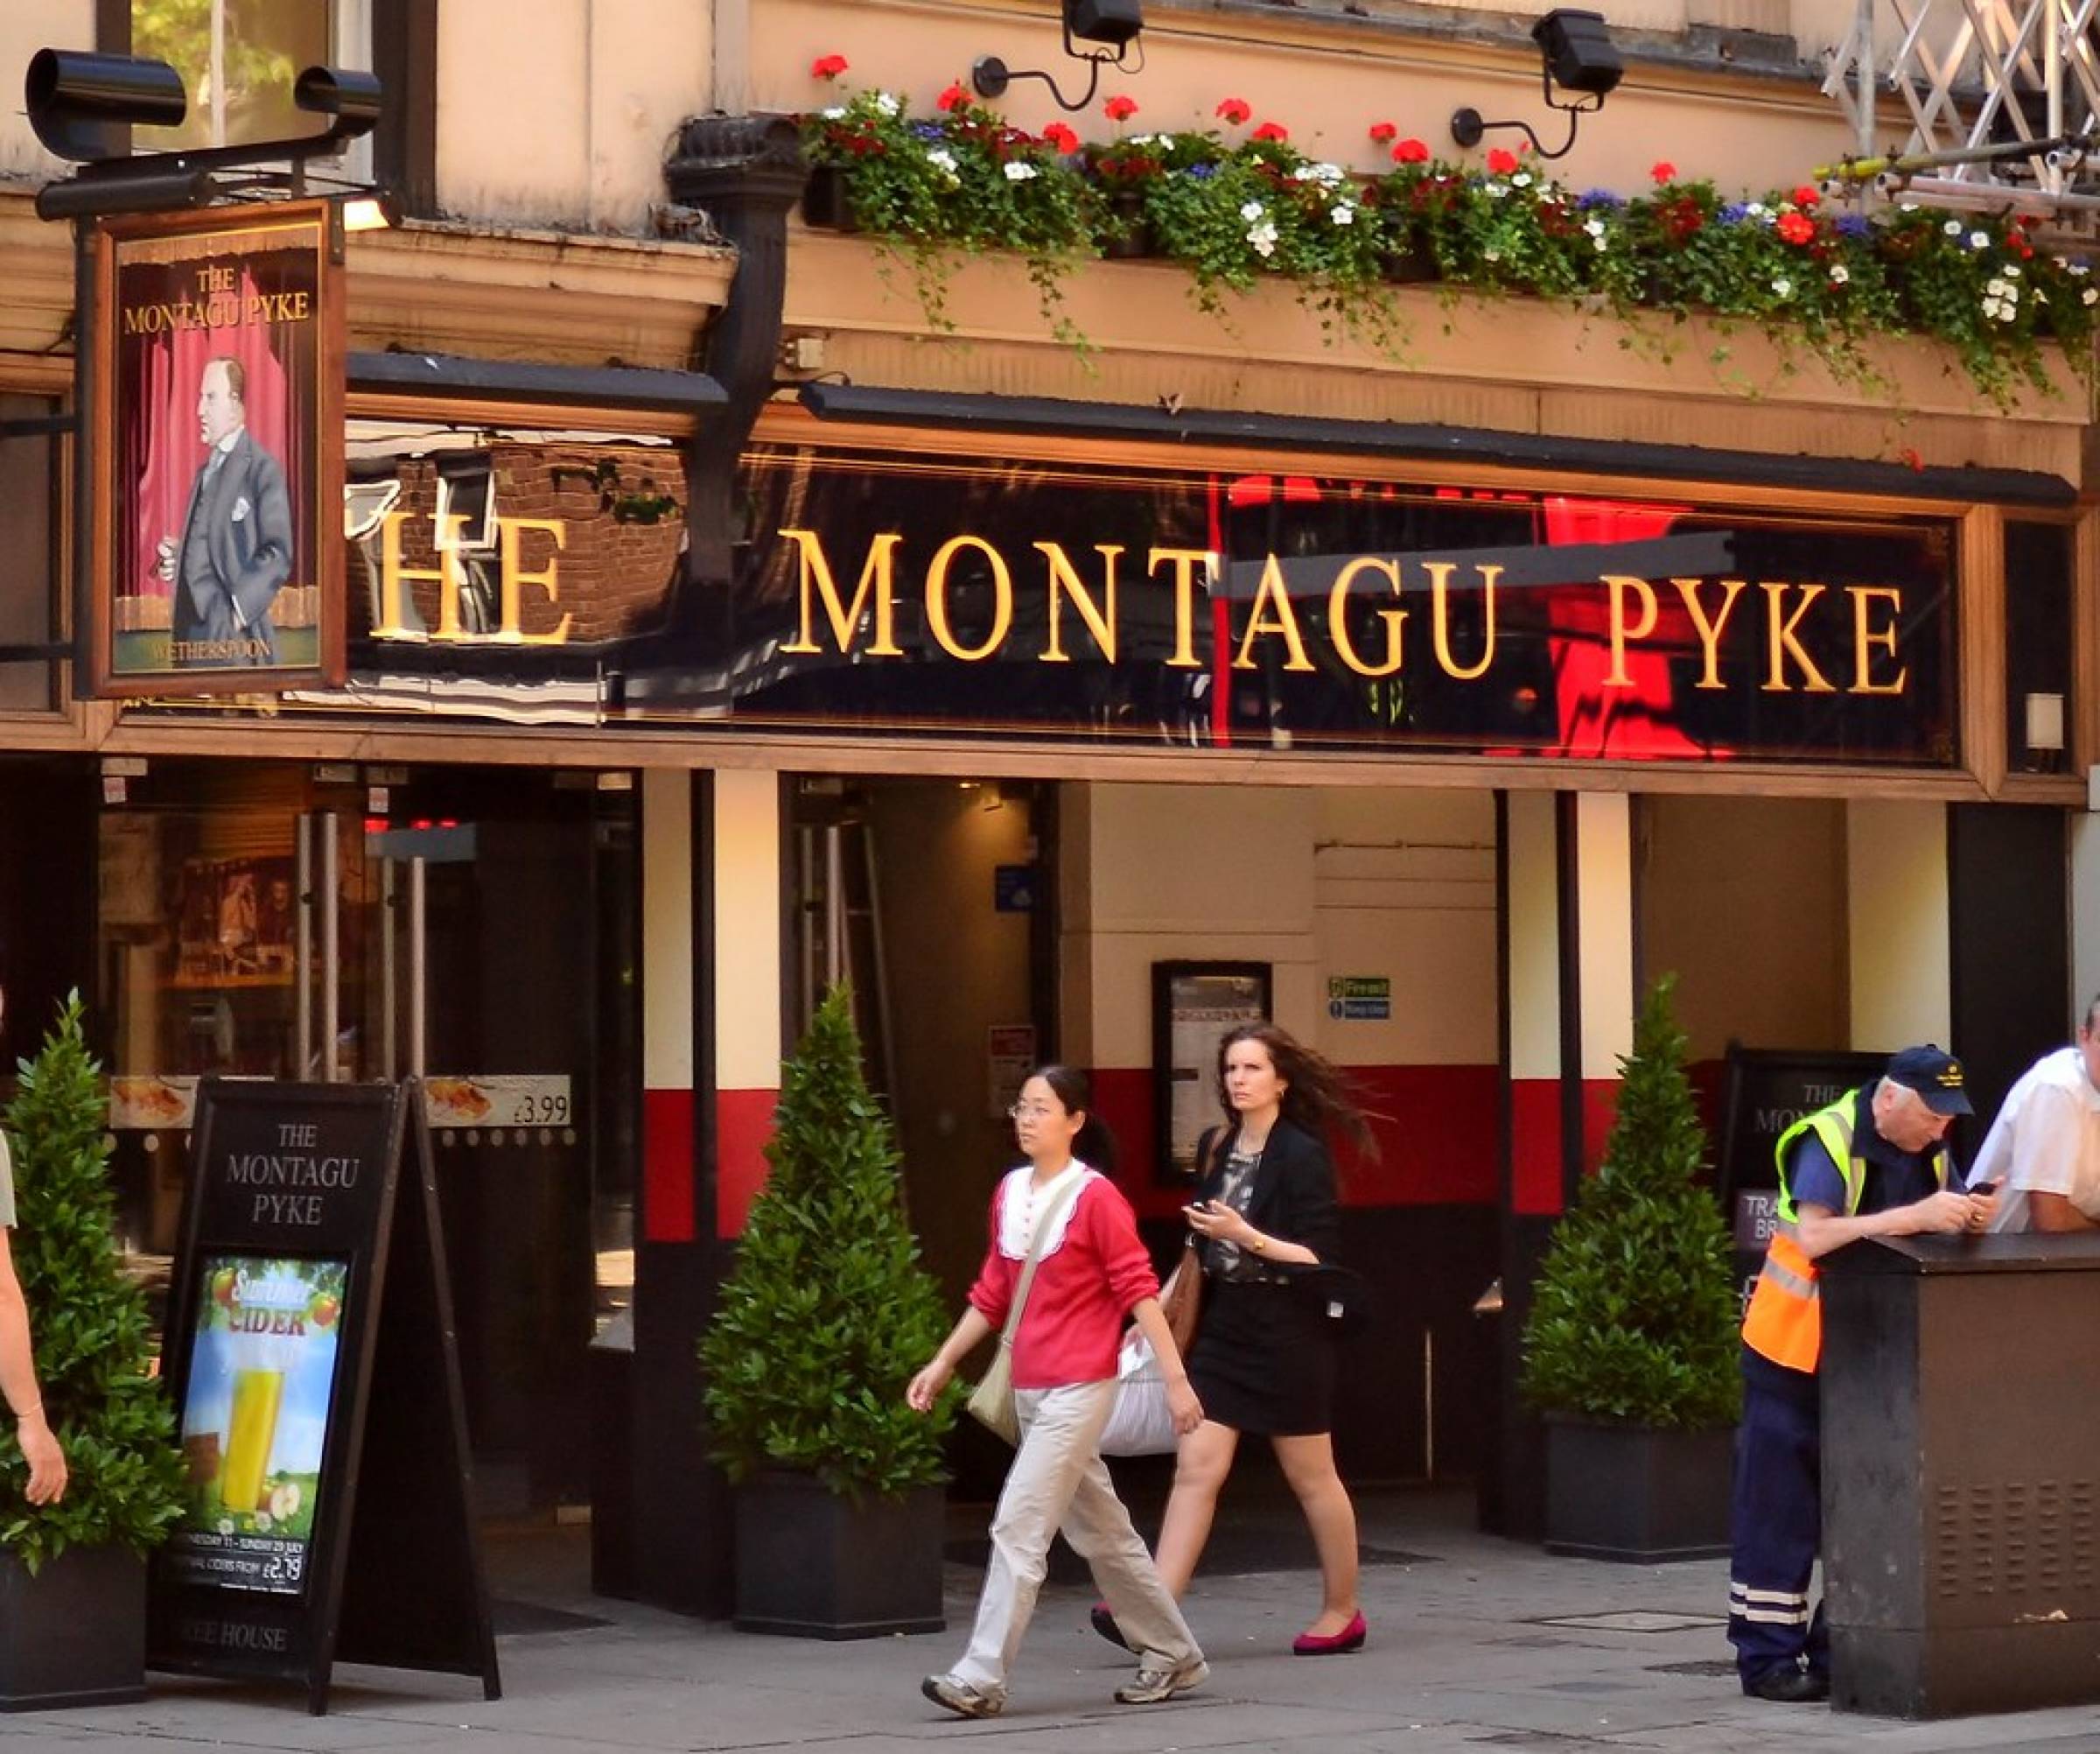 The Montagu Pyke pub, J D Wetherspoon, Soho